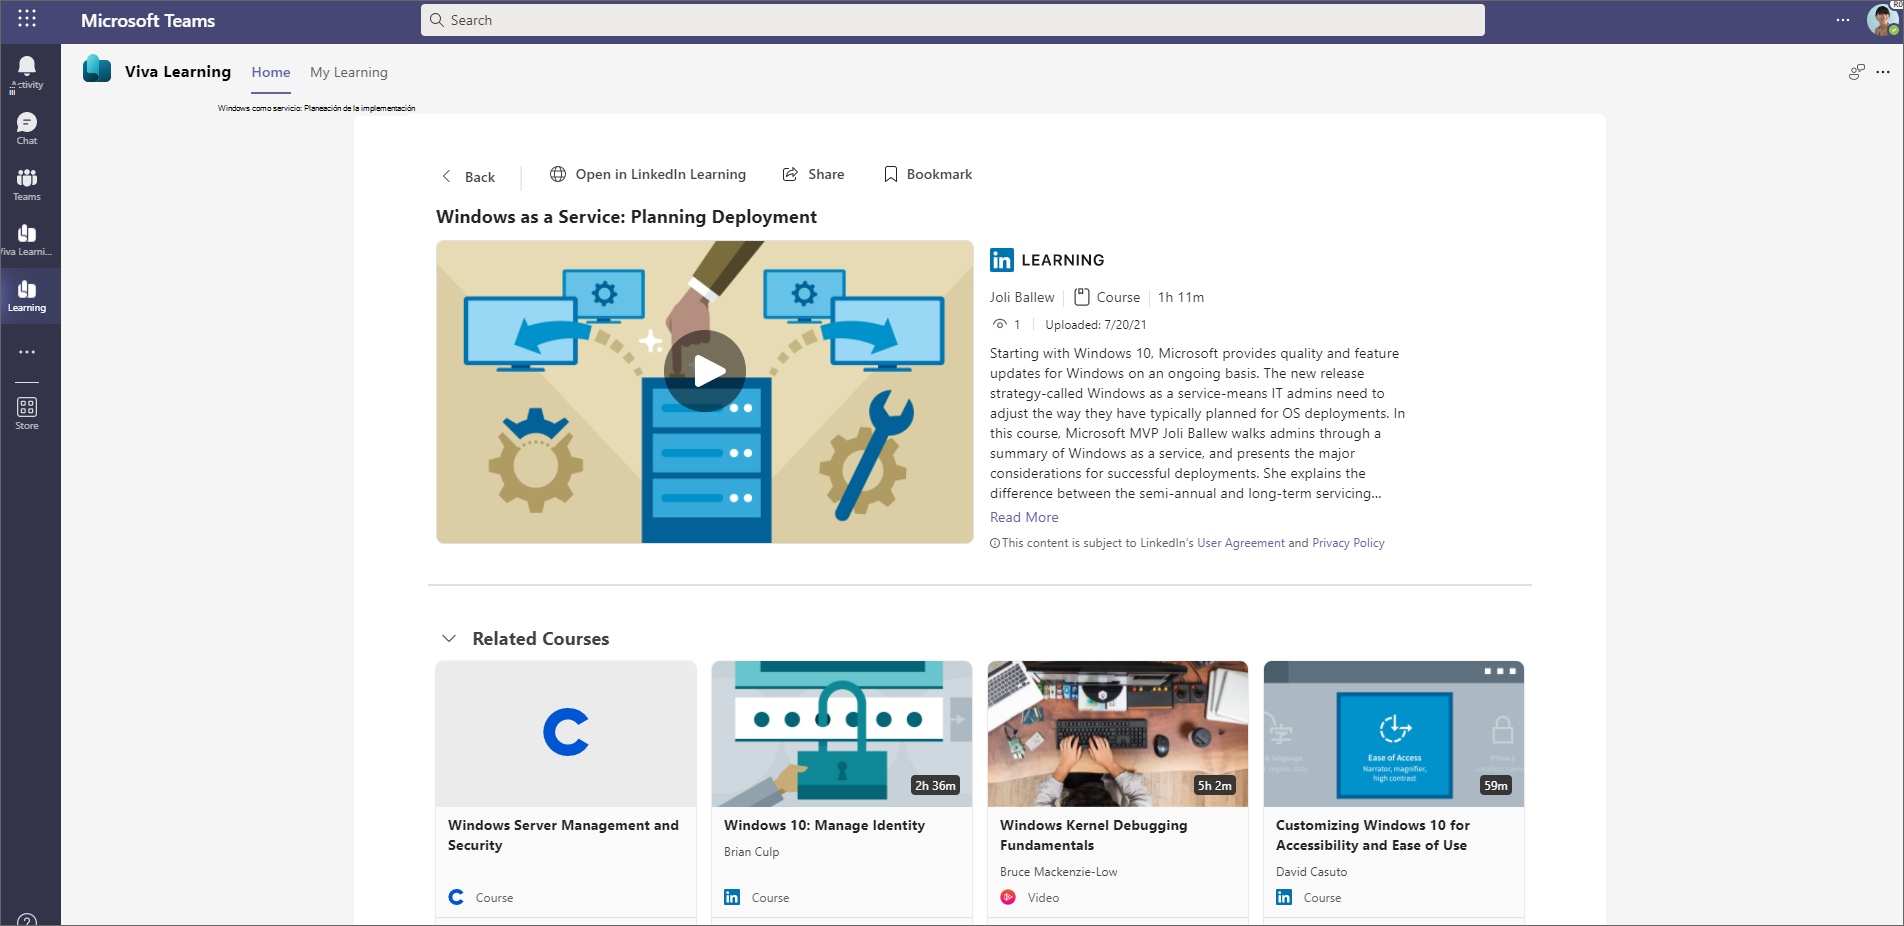 Captura de pantalla de la página principal de Viva Learning en Teams.